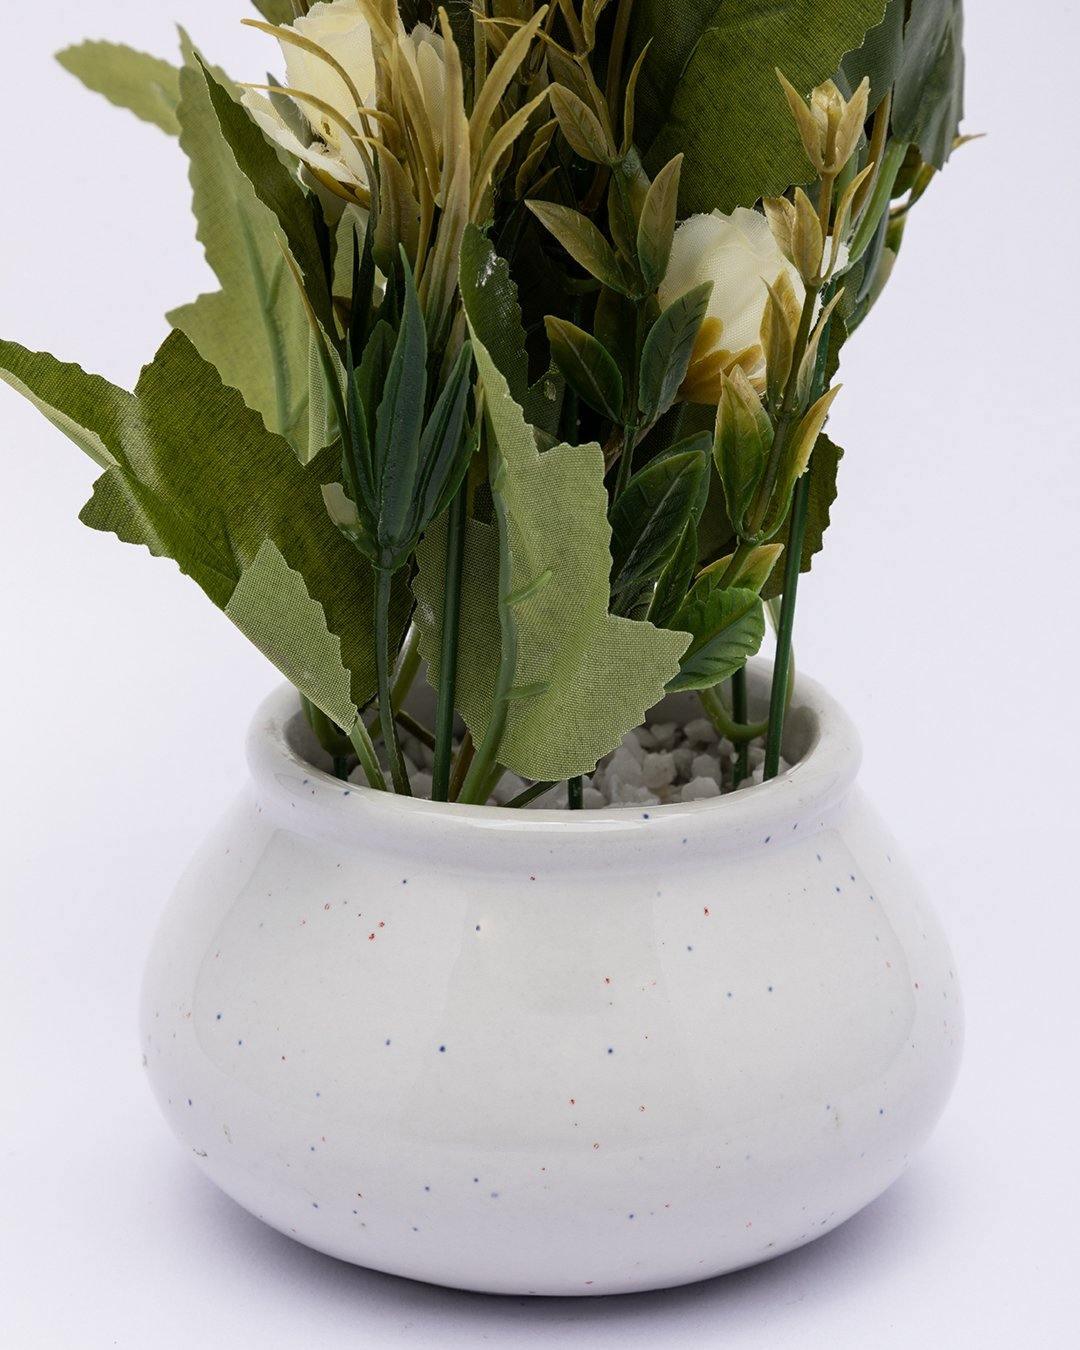 Artificial Plant with Handi Shaped Pot, Rose Flower Arrangement, Peach, Plastic Plant - MARKET 99